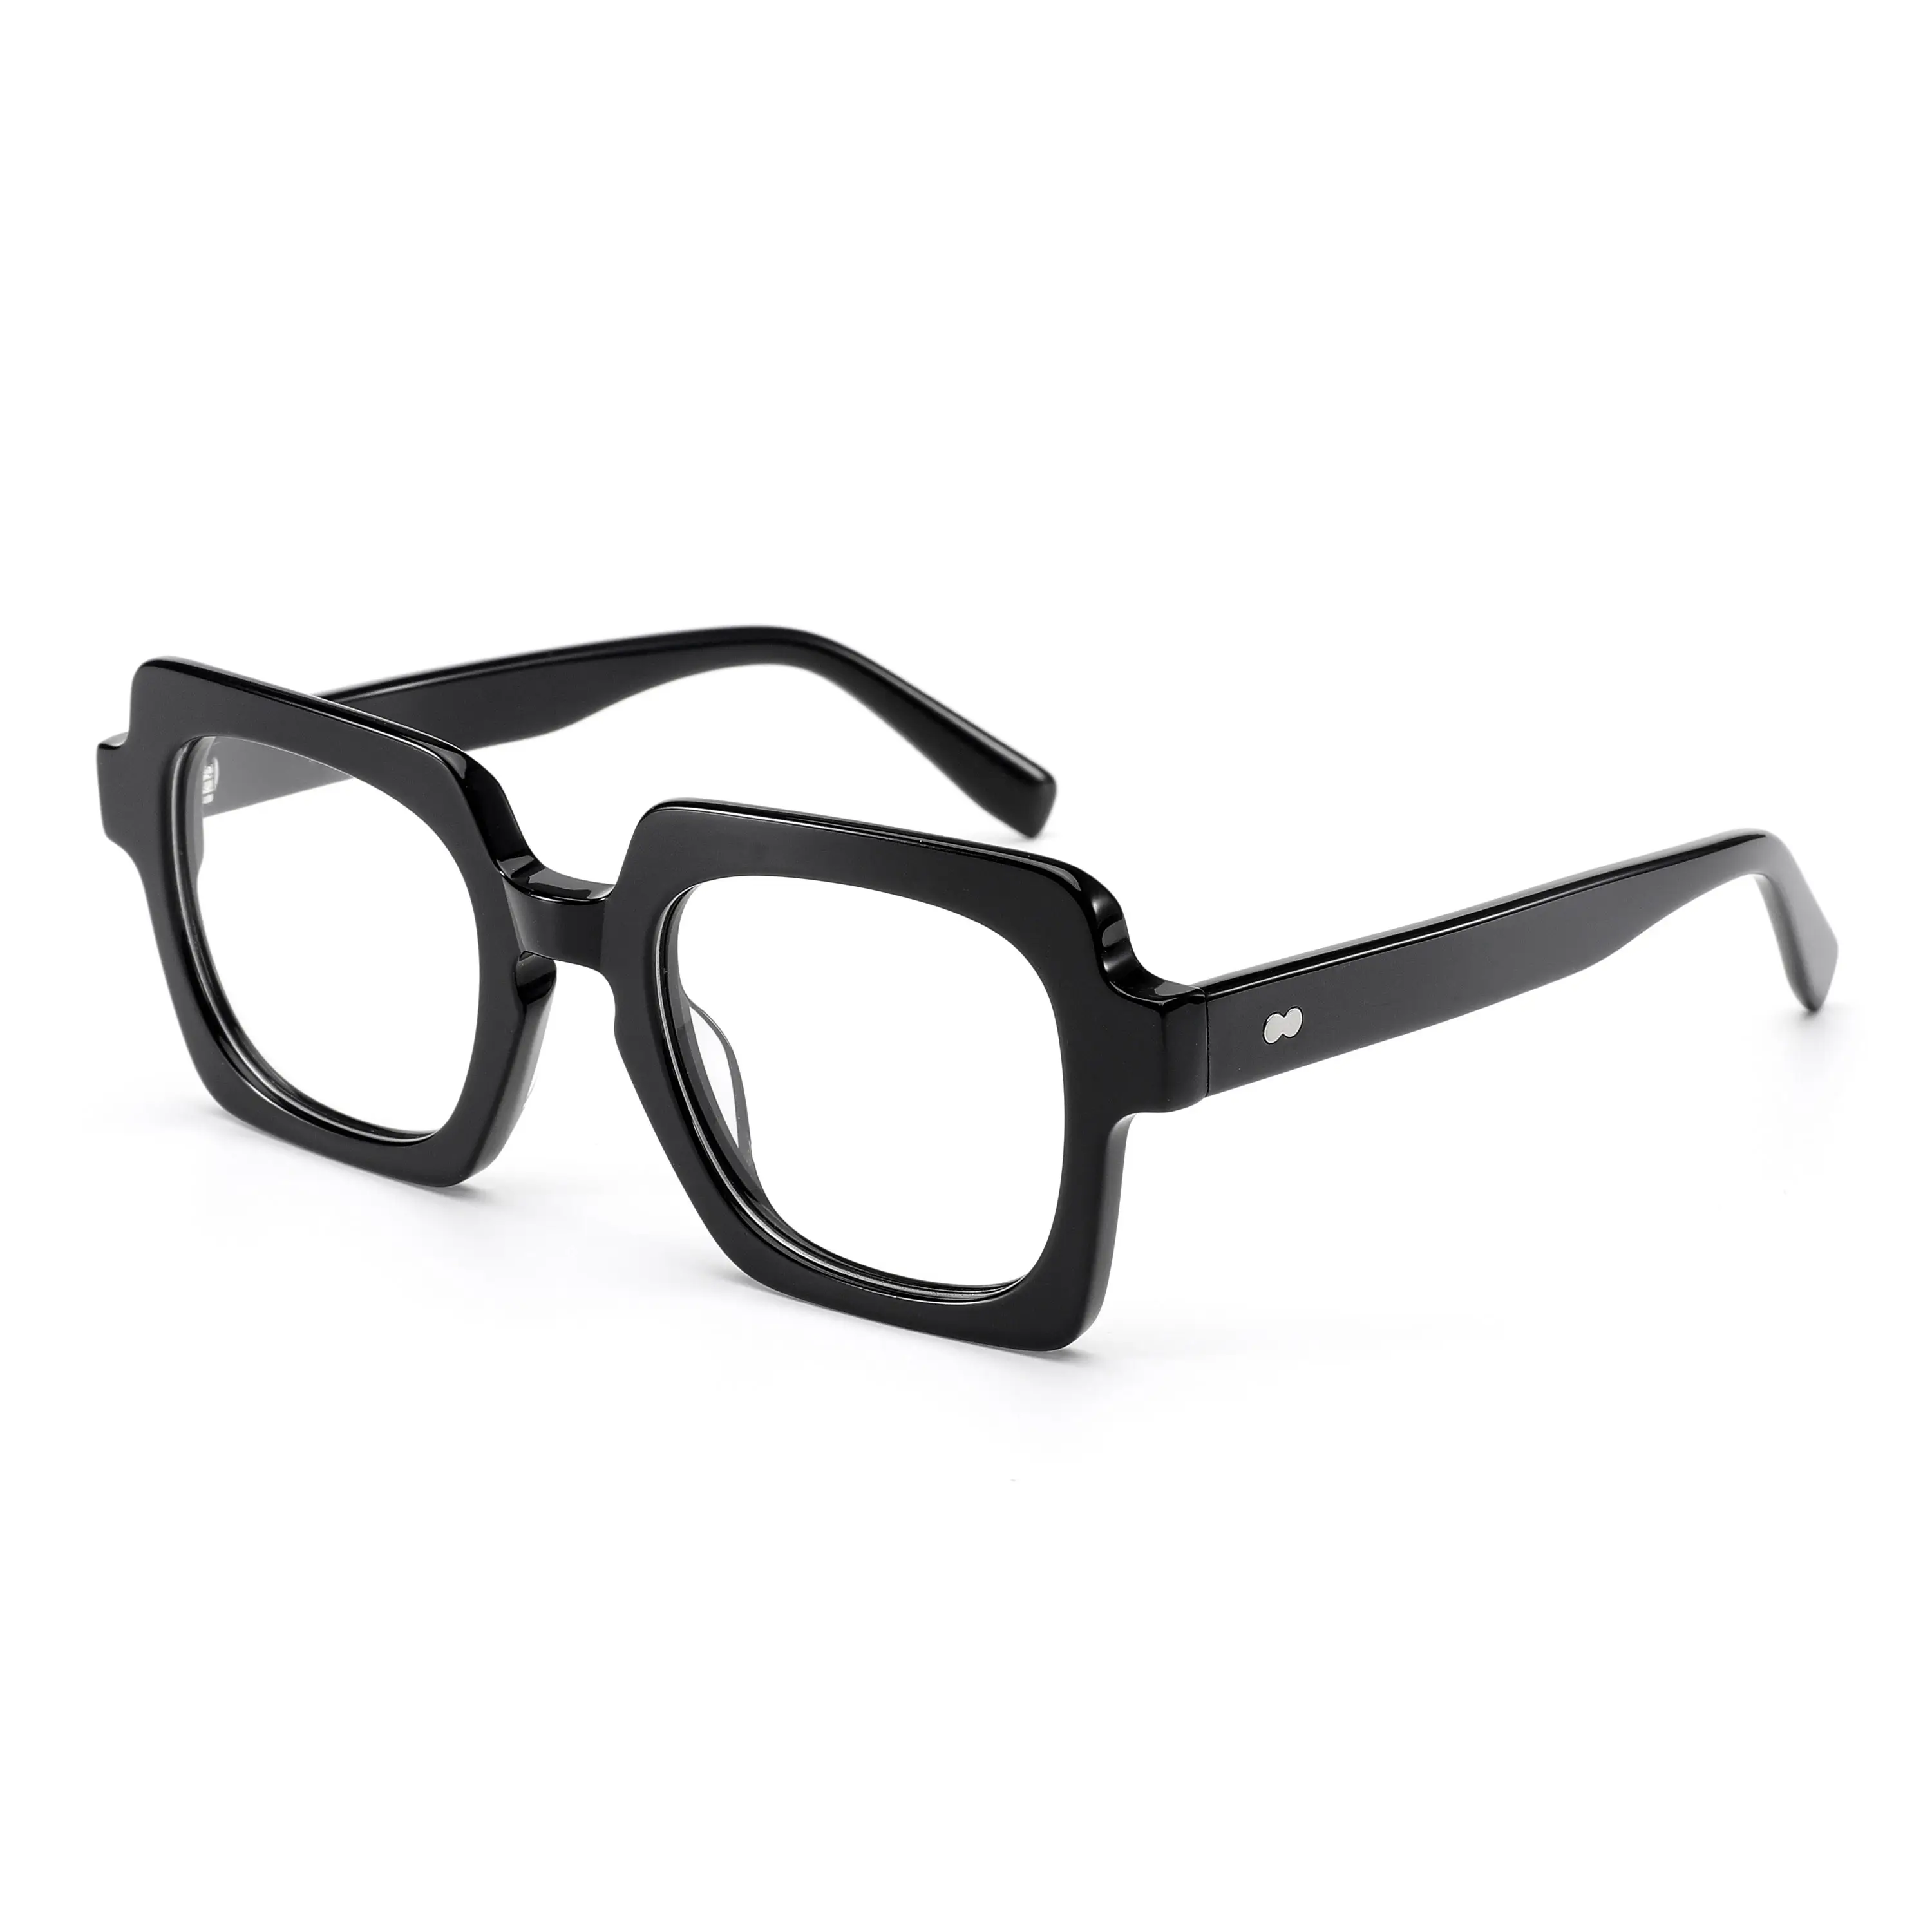 إطارات نظارات مربعة عكسية عالية الجودة تصميم ريترو فاخرة من زجاج الأسيتات إطارات نظارات رجالي